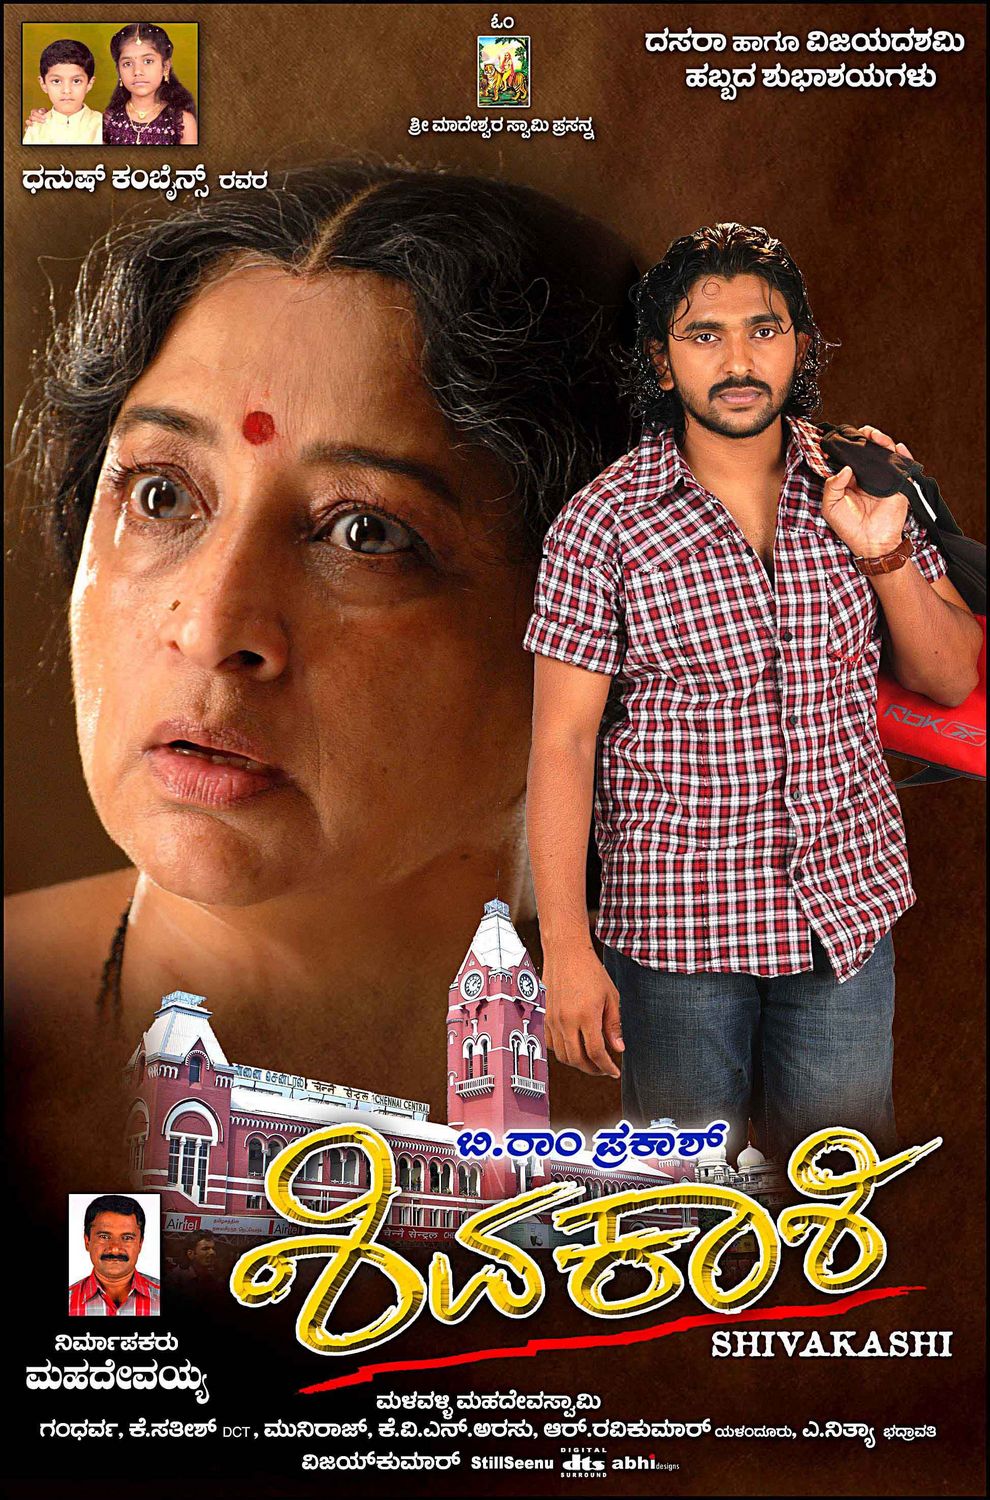 Extra Large Movie Poster Image for Shivakashi (#11 of 13)